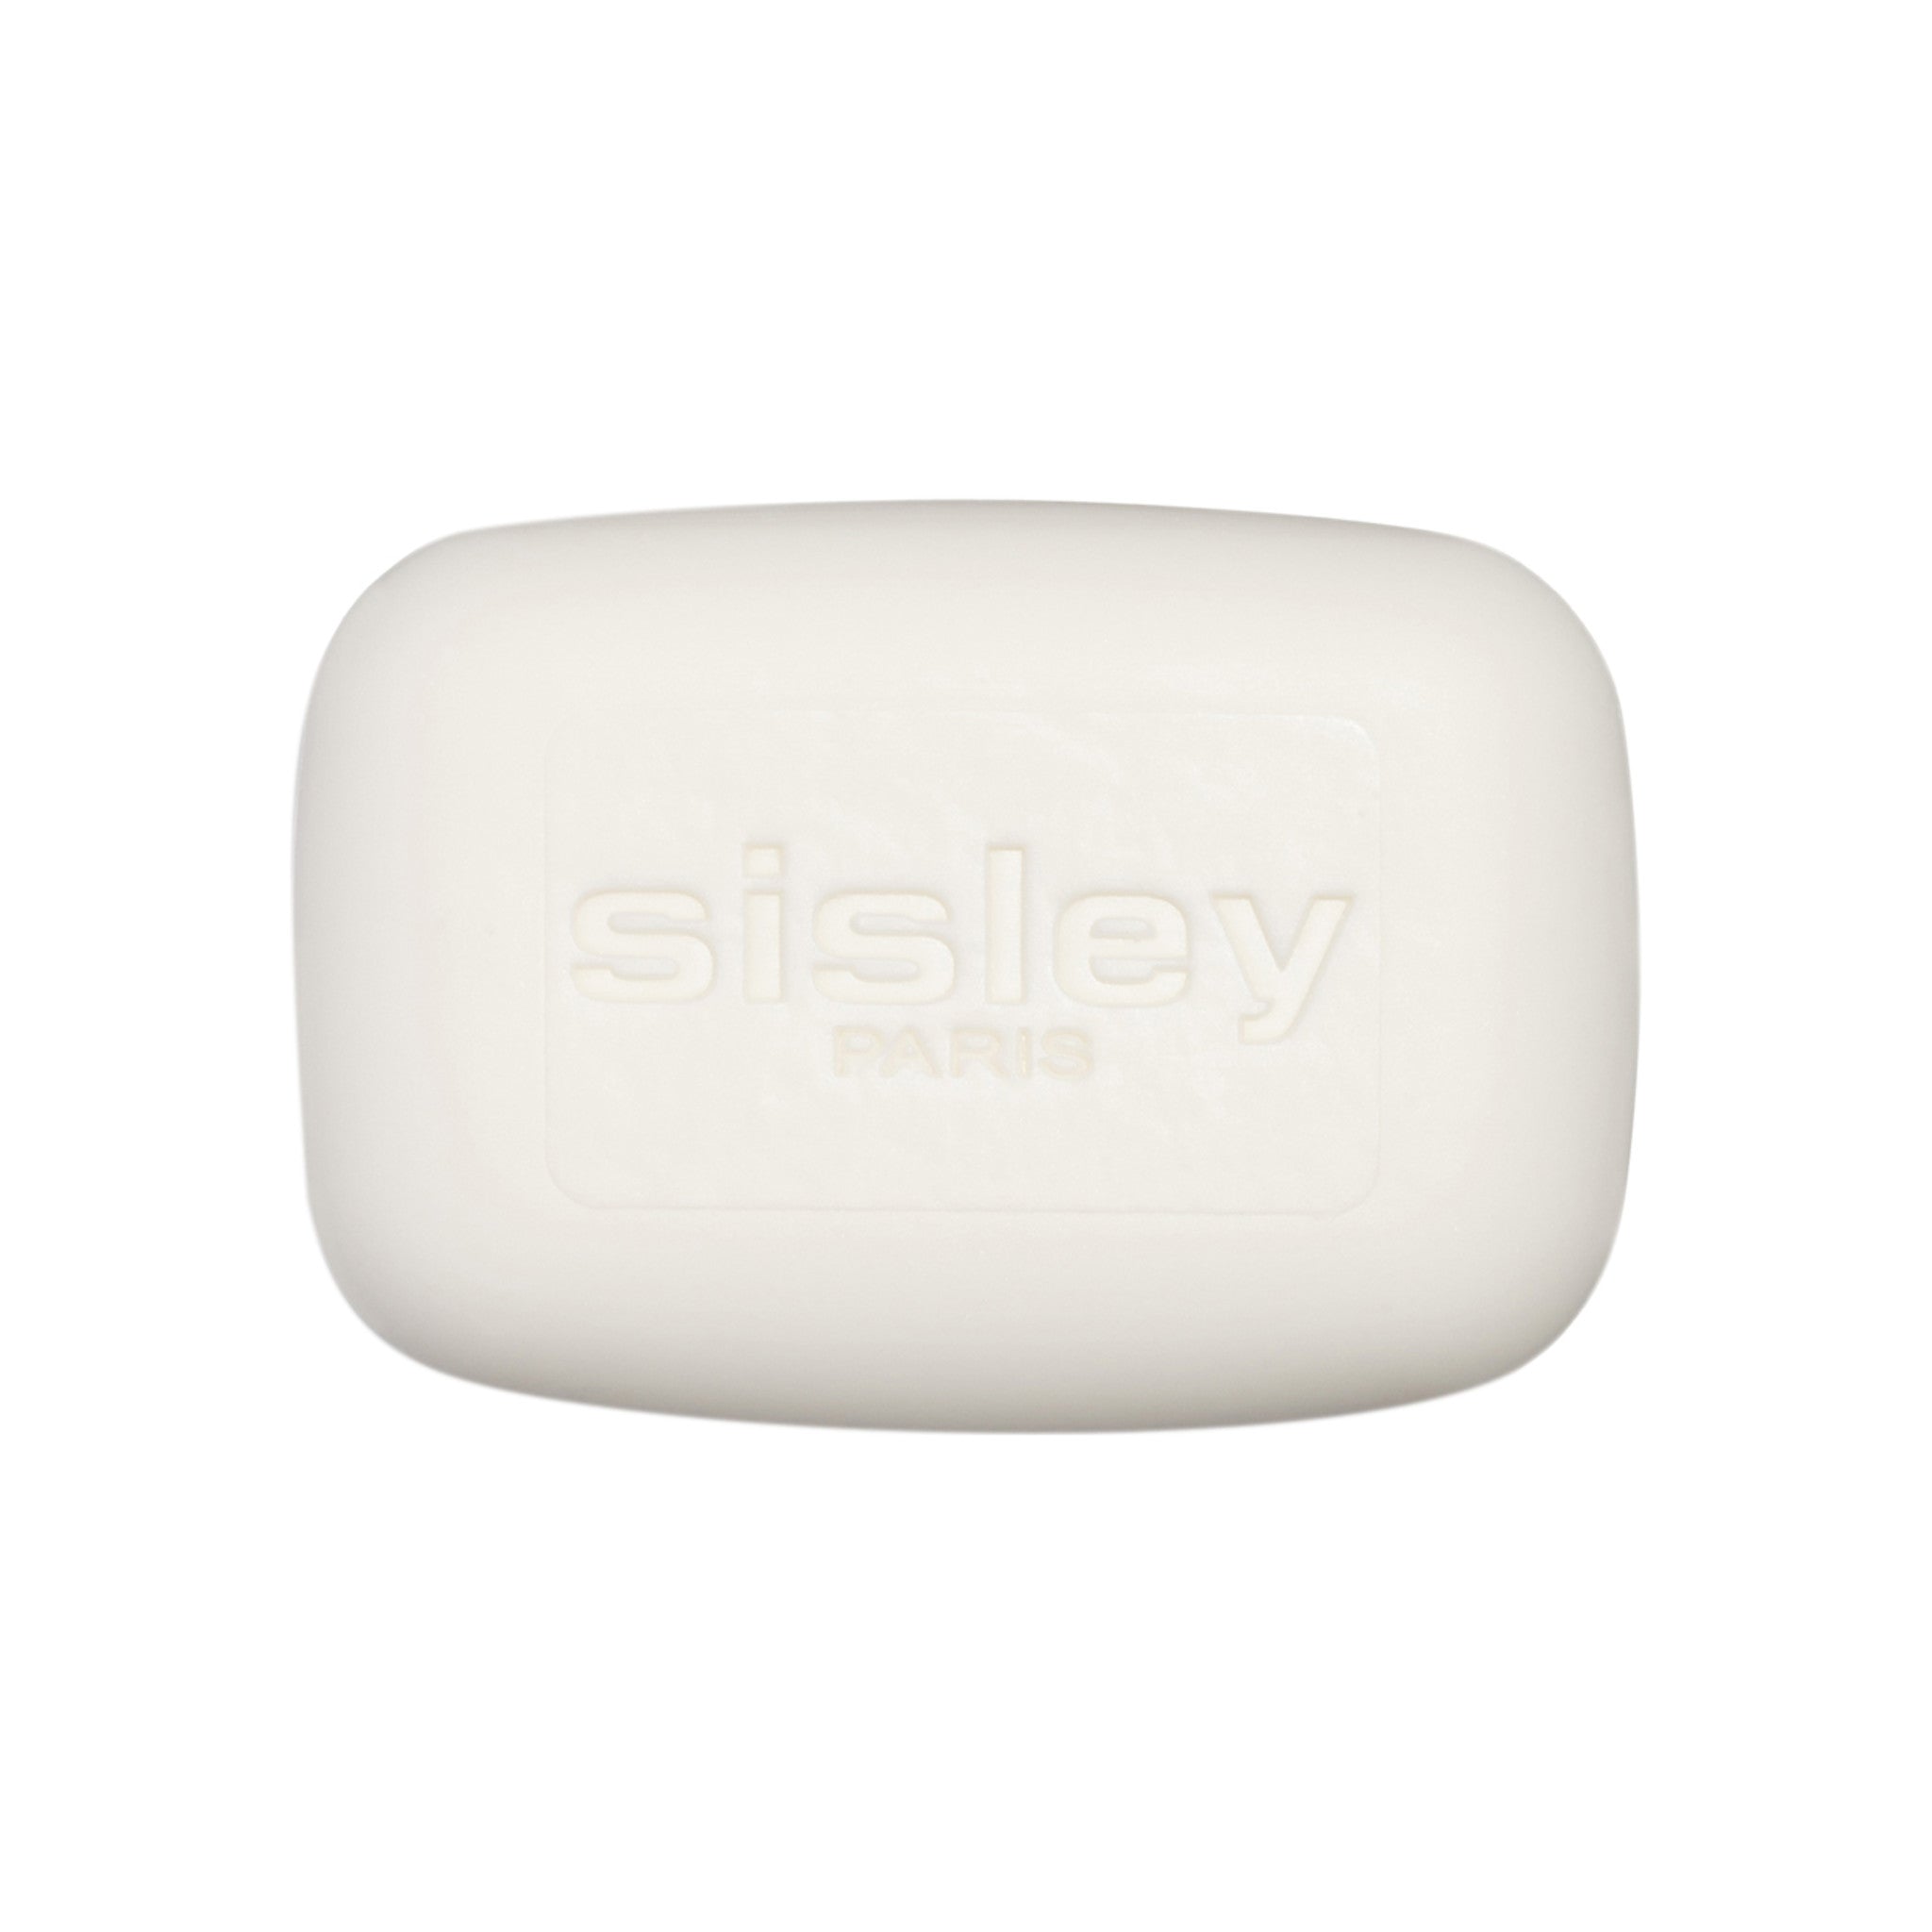 Sisley-Paris Soapless Facial Cleansing Bar main image.